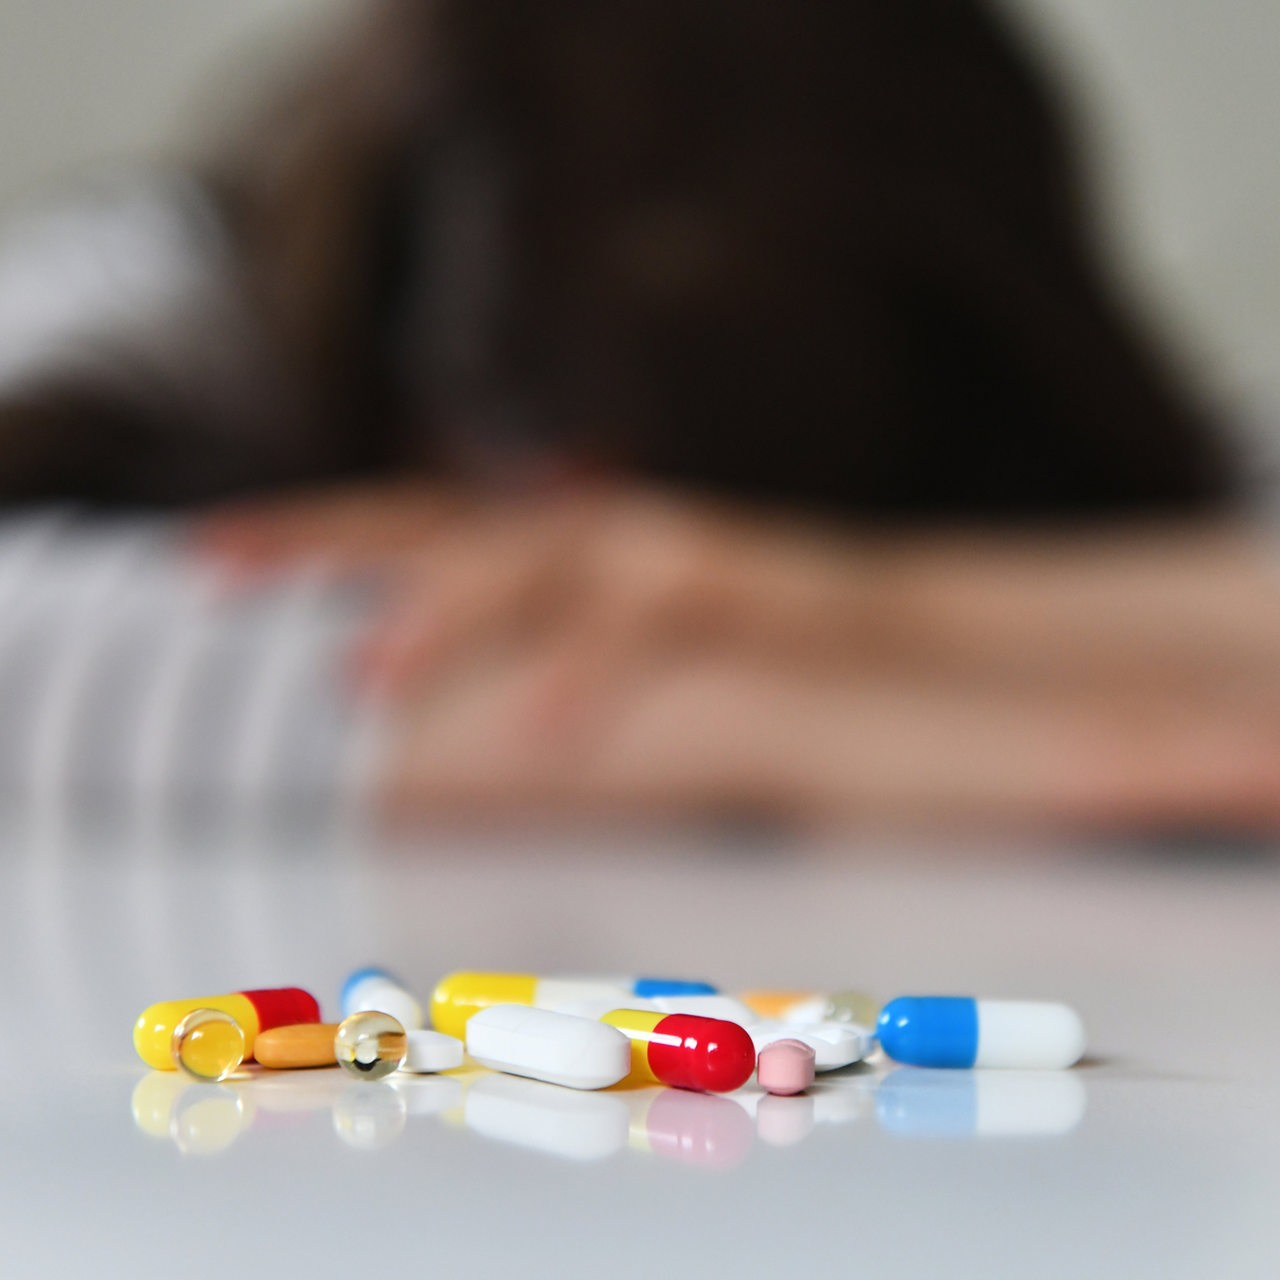 Symbolfoto zum Thema Depressionen: Tabletten liegen vor einer unscharfen Person, die ihren Kopf auf den Tisch legt.